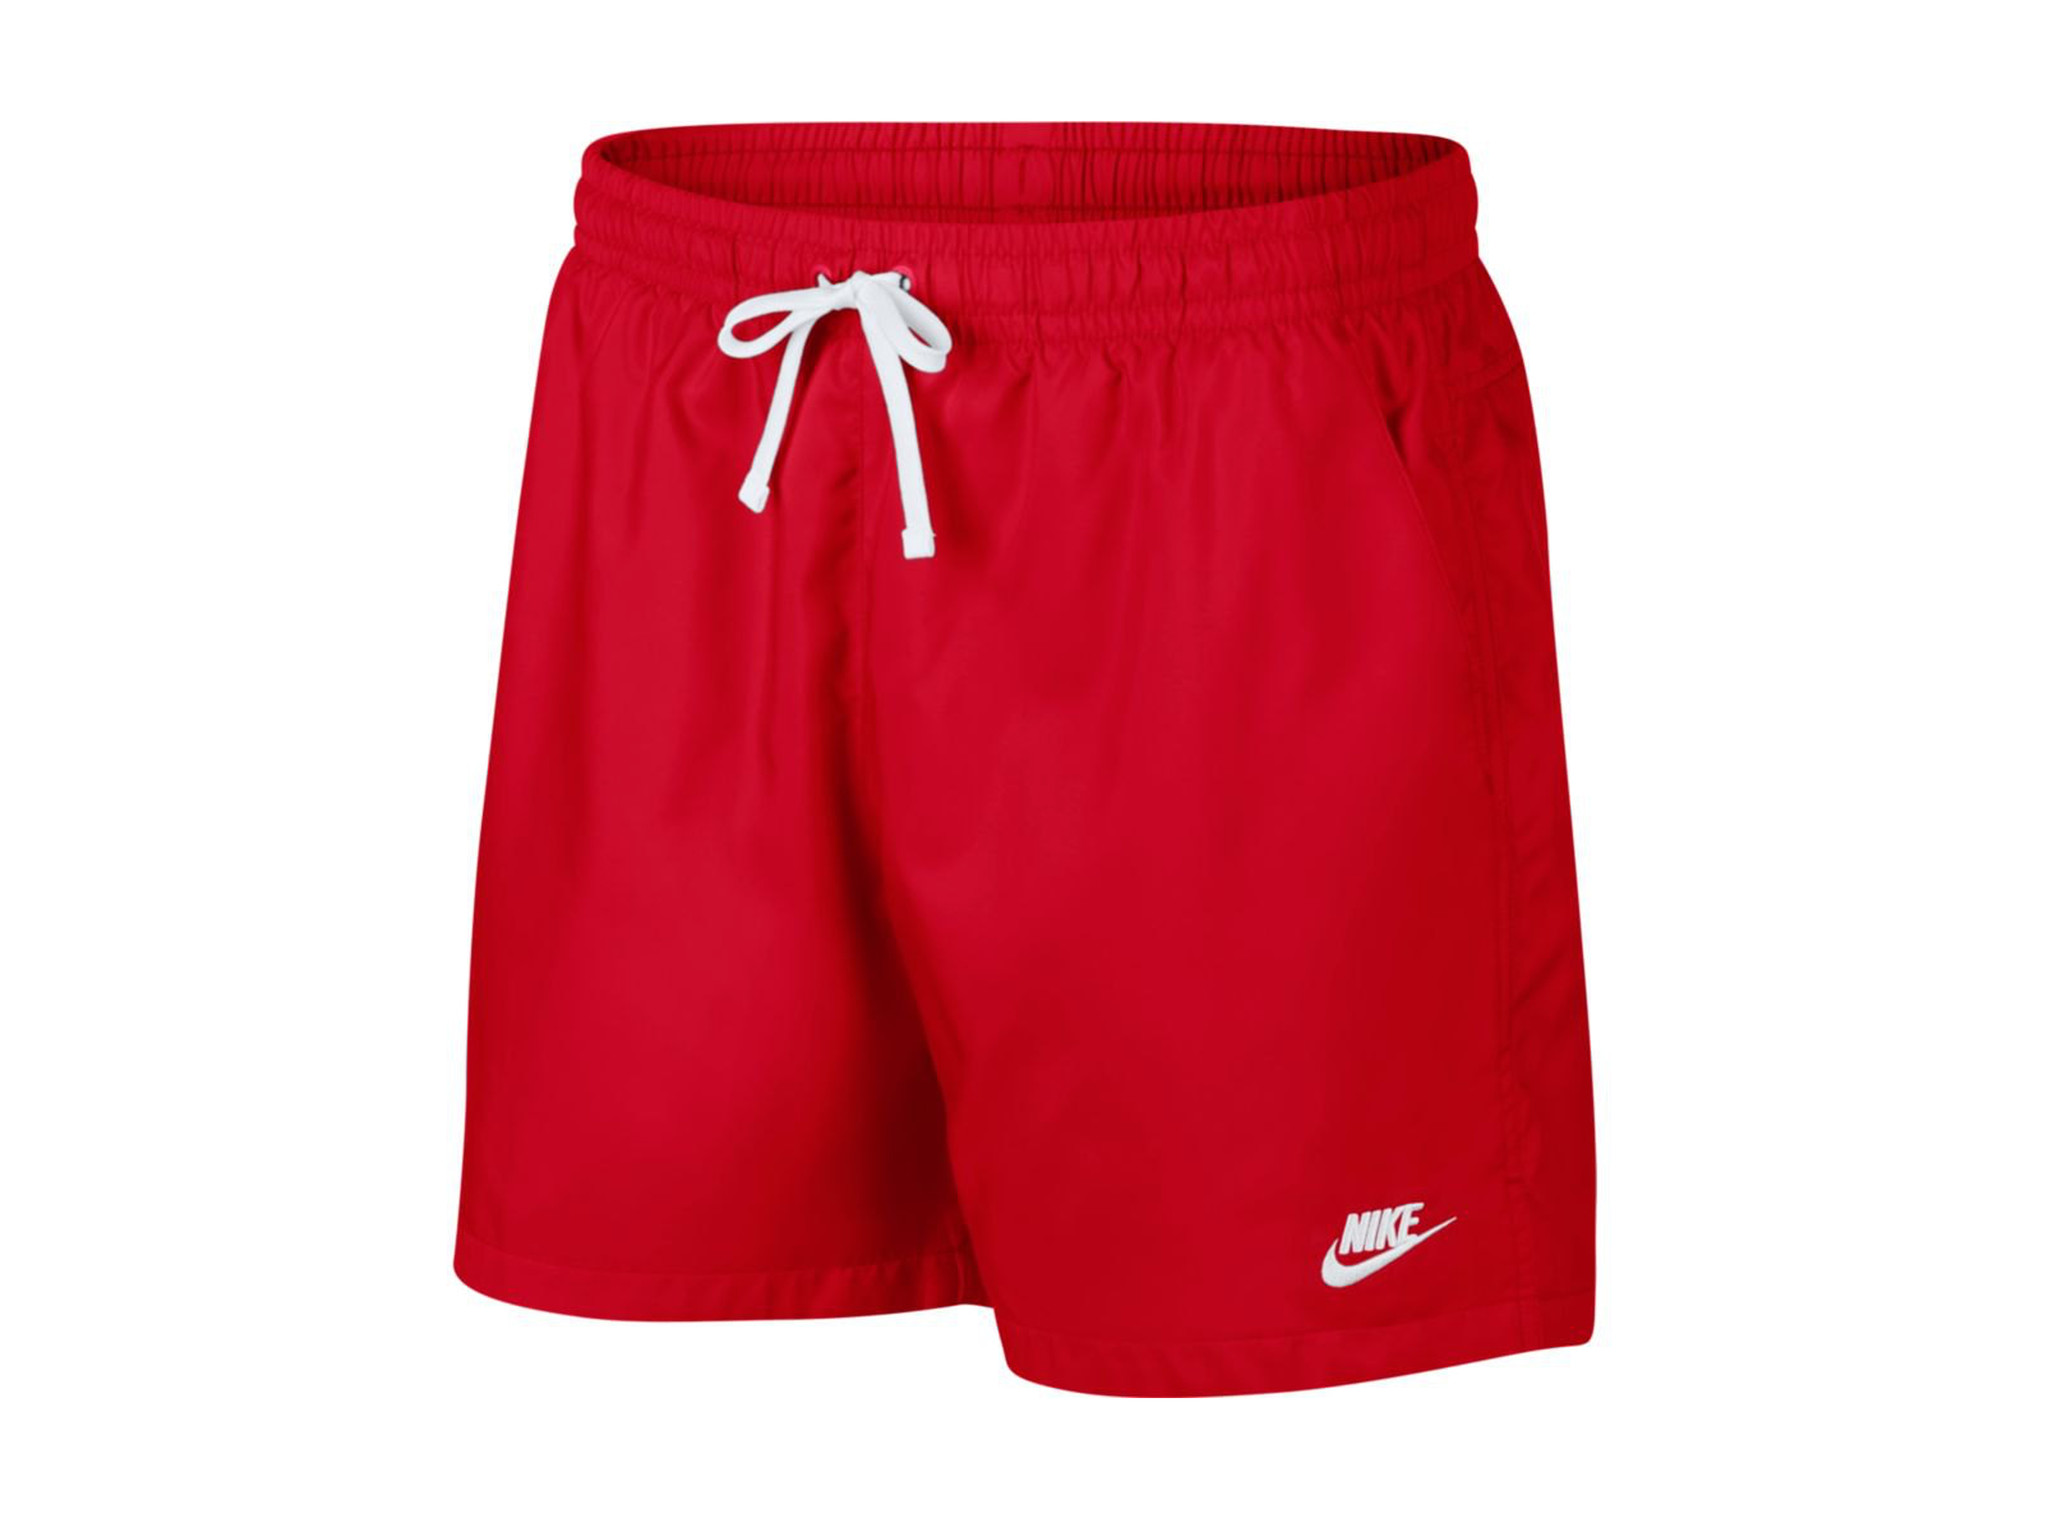 nike university red shorts